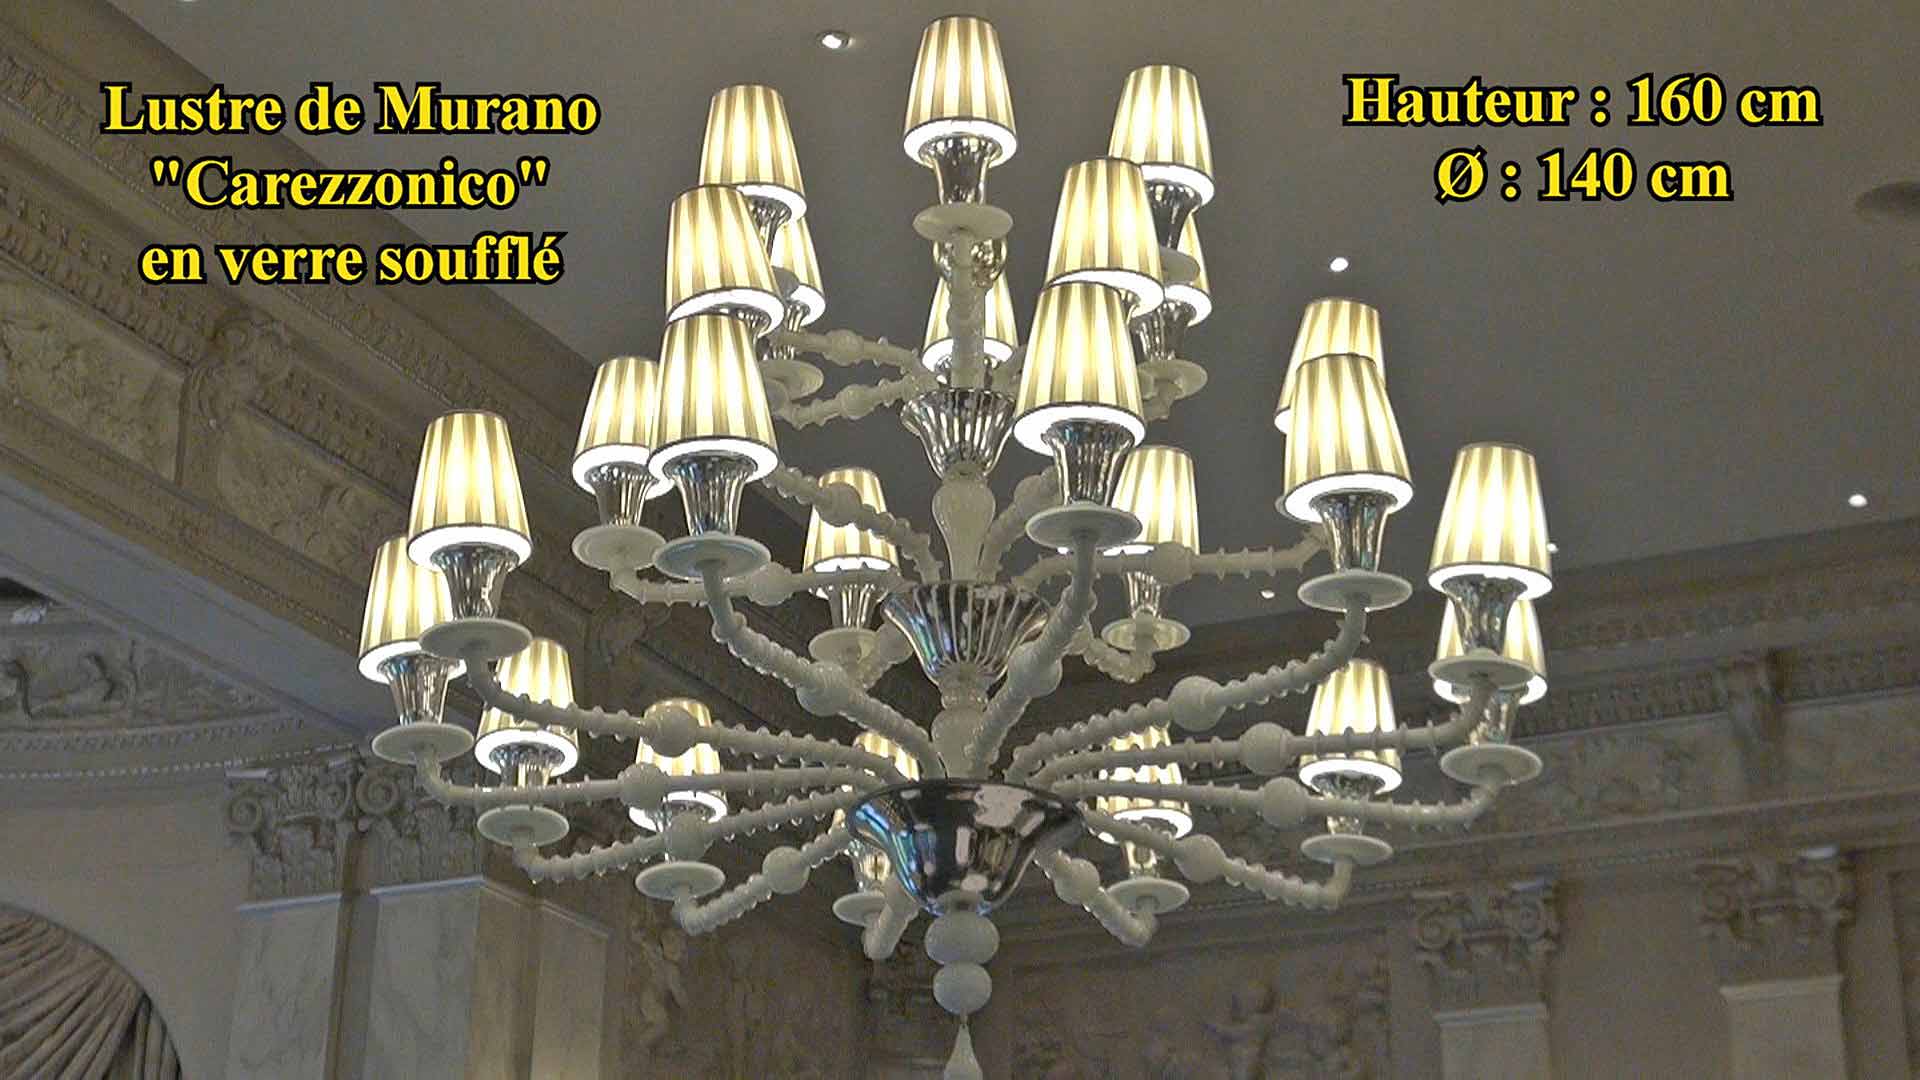 Le lustre Murano